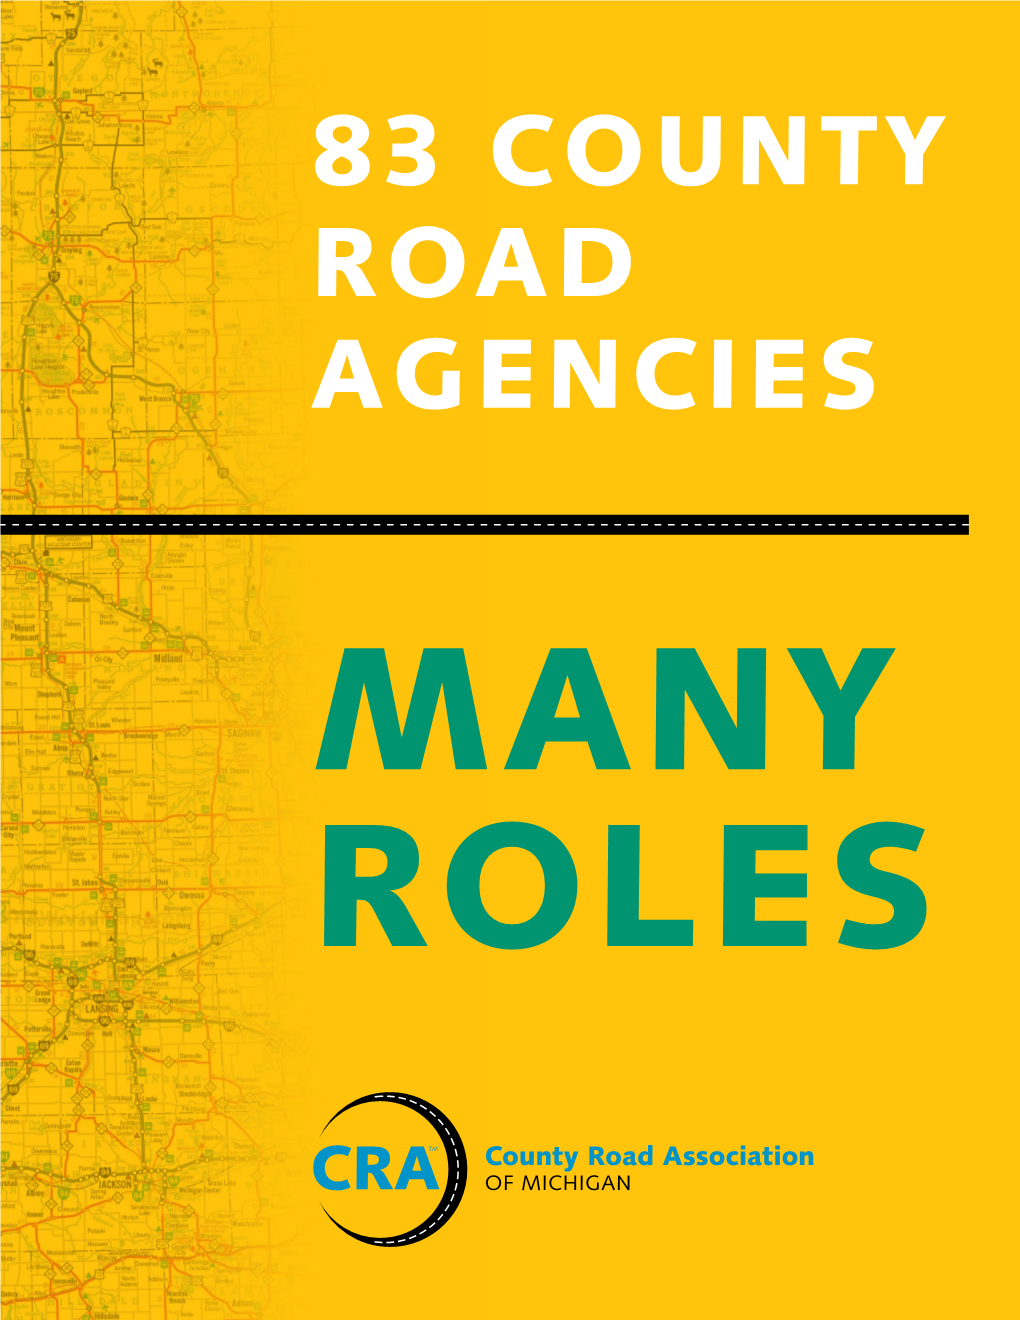 83 County Road Agencies